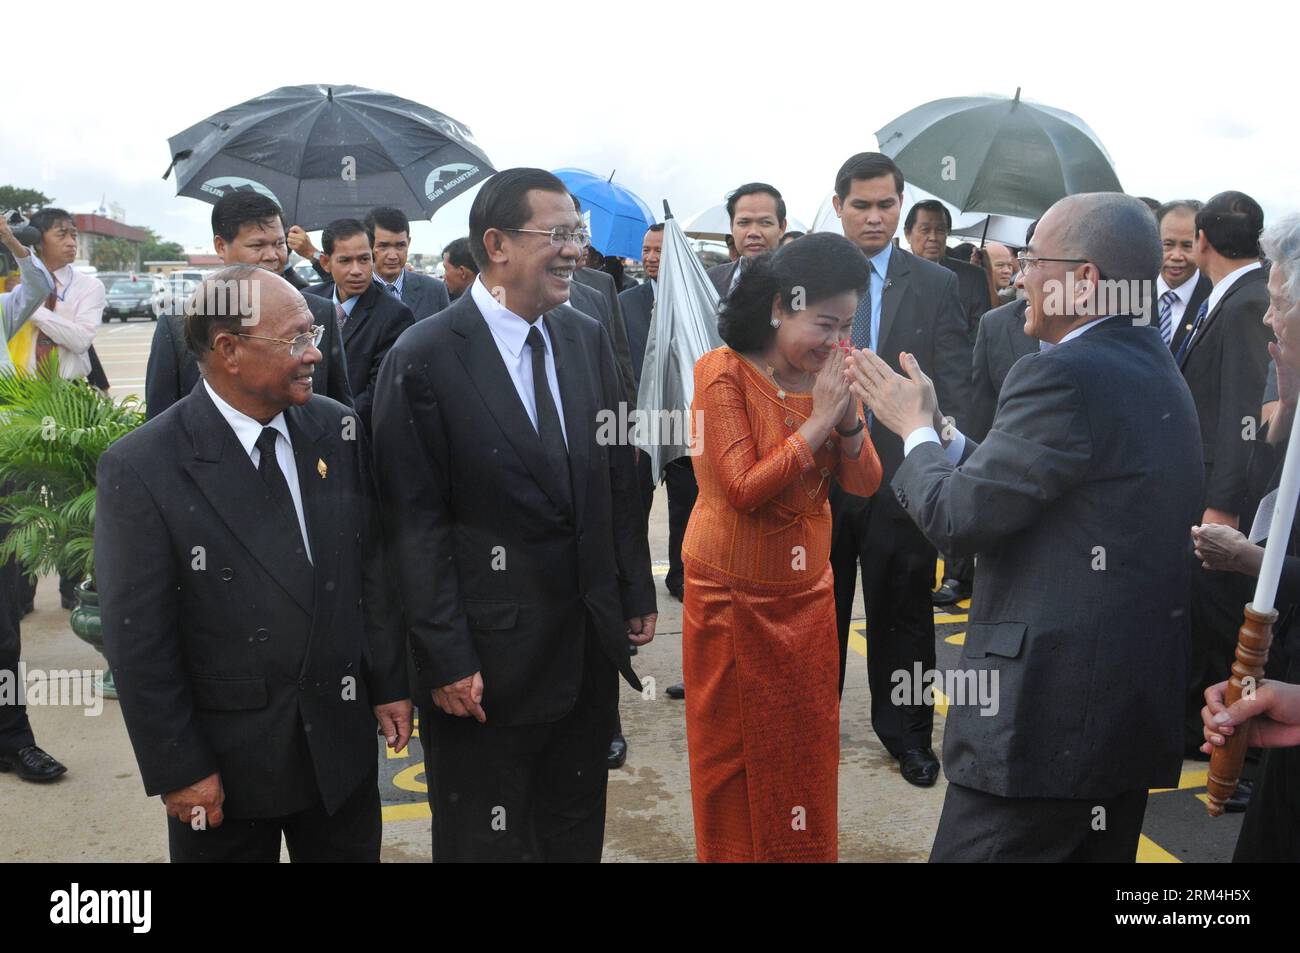 Bildnummer : 60460839 Datum : 11.09.2013 Copyright : imago/Xinhua (130911) -- PHNOM PENH, 11 septembre 2013 (Xinhua) -- le roi cambodgien Norodom Sihamoni (R) est accueilli par le Premier ministre Hun Sen (2e L) et son épouse Bun Rany (2e R) à l'aéroport international de Phnom Penh, Cambodge, le 11 septembre 2013. (Xinhua/Sovannara)(rh) CAMBODIA-PHNOM PENH-KING-WISHING PUBLICATIONxNOTxINxCHN People Politik x1x xkg 2013 quer premiumd o0 Familie privée Frau 60460839 Date 11 09 2013 Copyright Imago XINHUA Phnom Penh sept 11 2013 le roi cambodgien de XINHUA Norodom Sihamoni r EST accueilli par le Premier ministre Banque D'Images